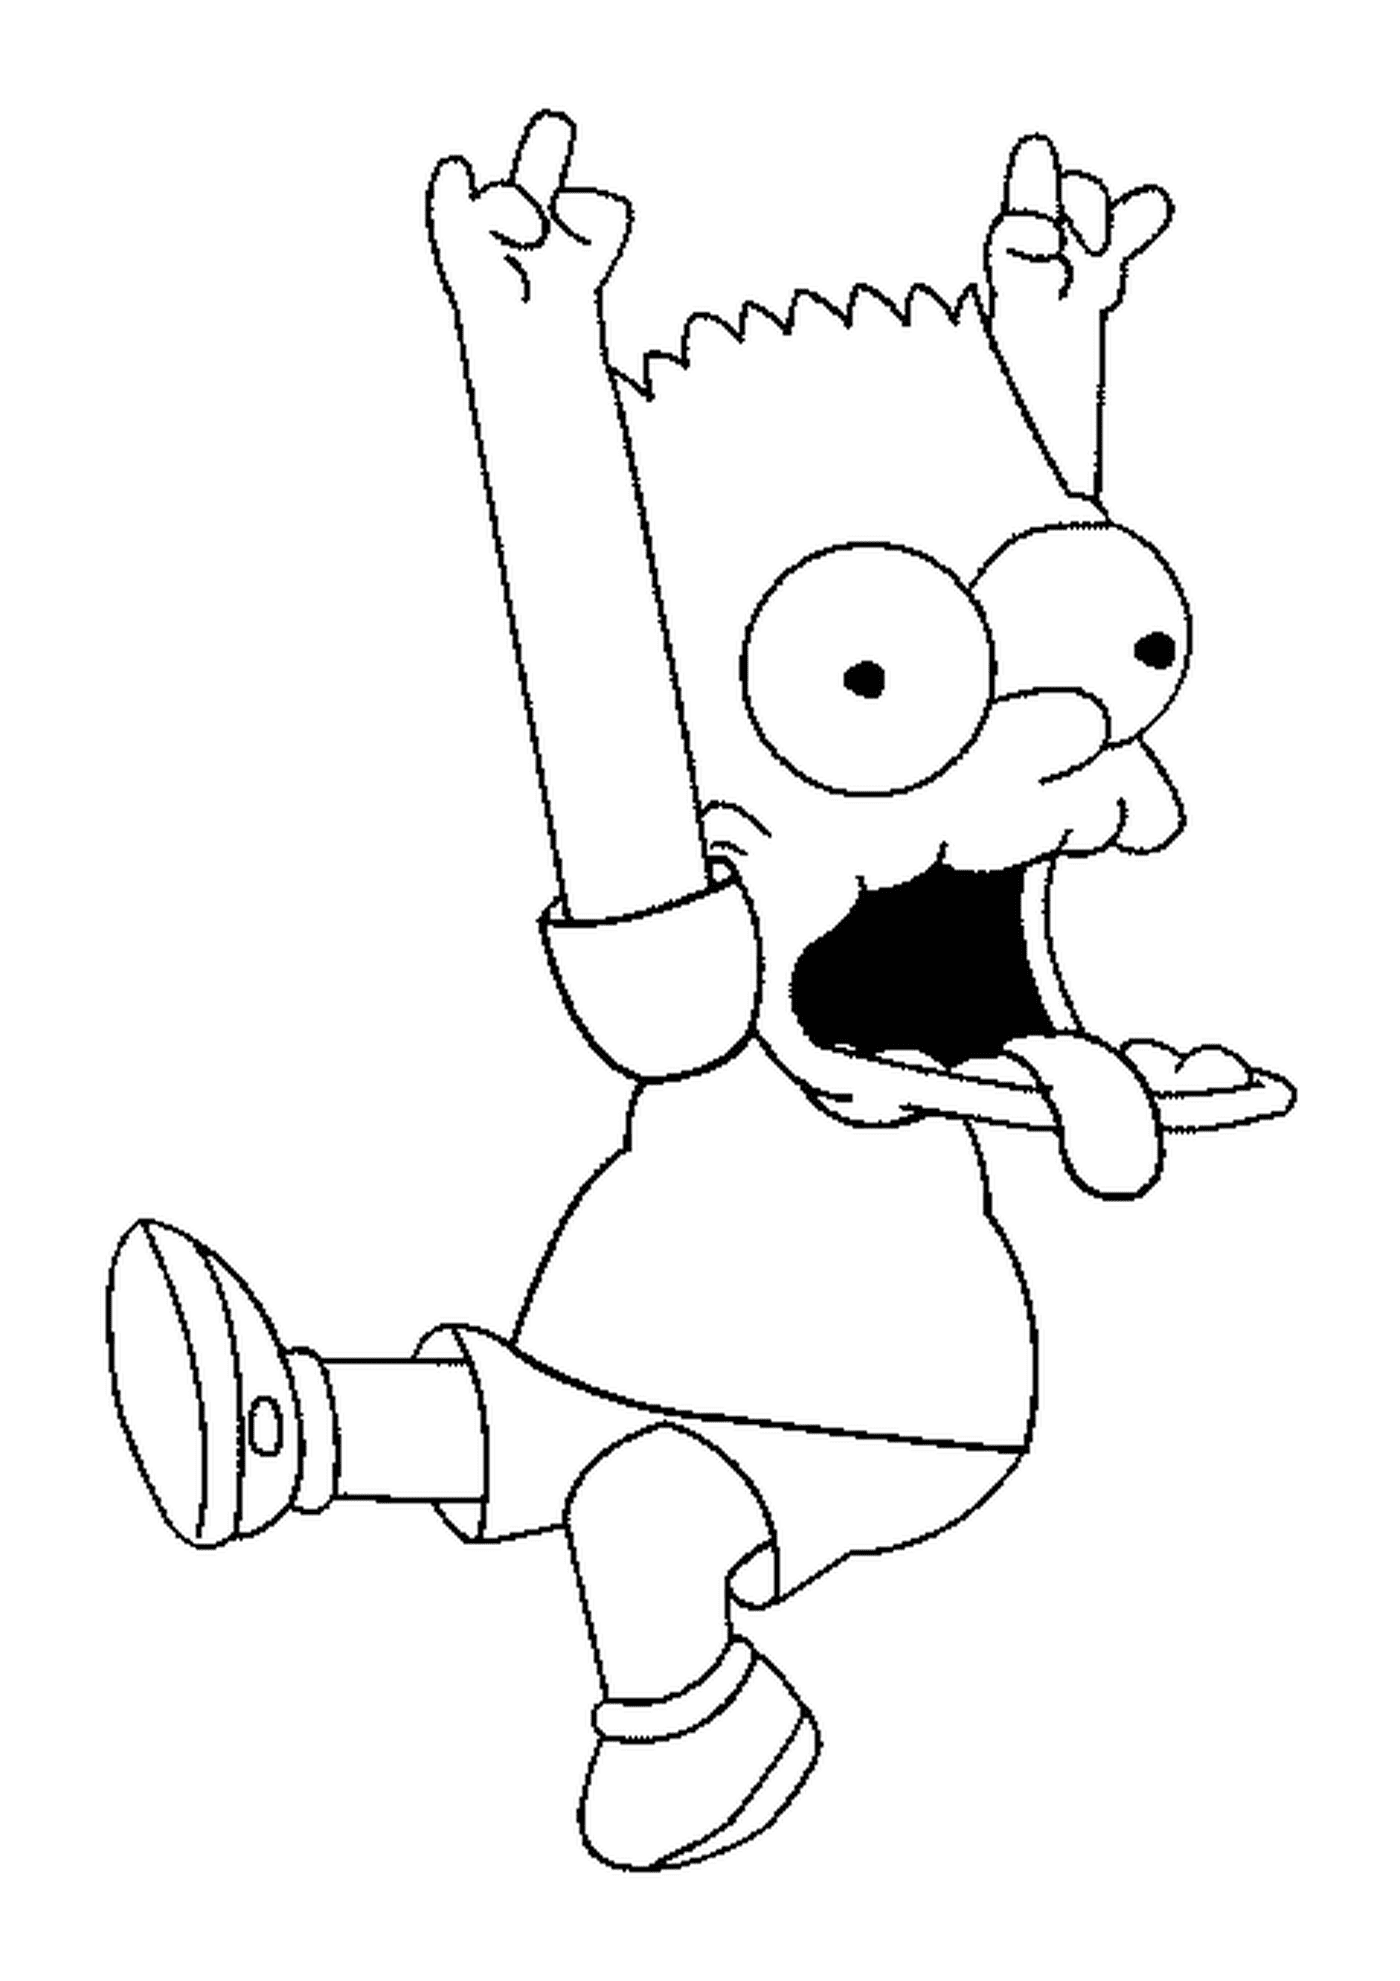  Bart fa un brivido con le braccia in aria 